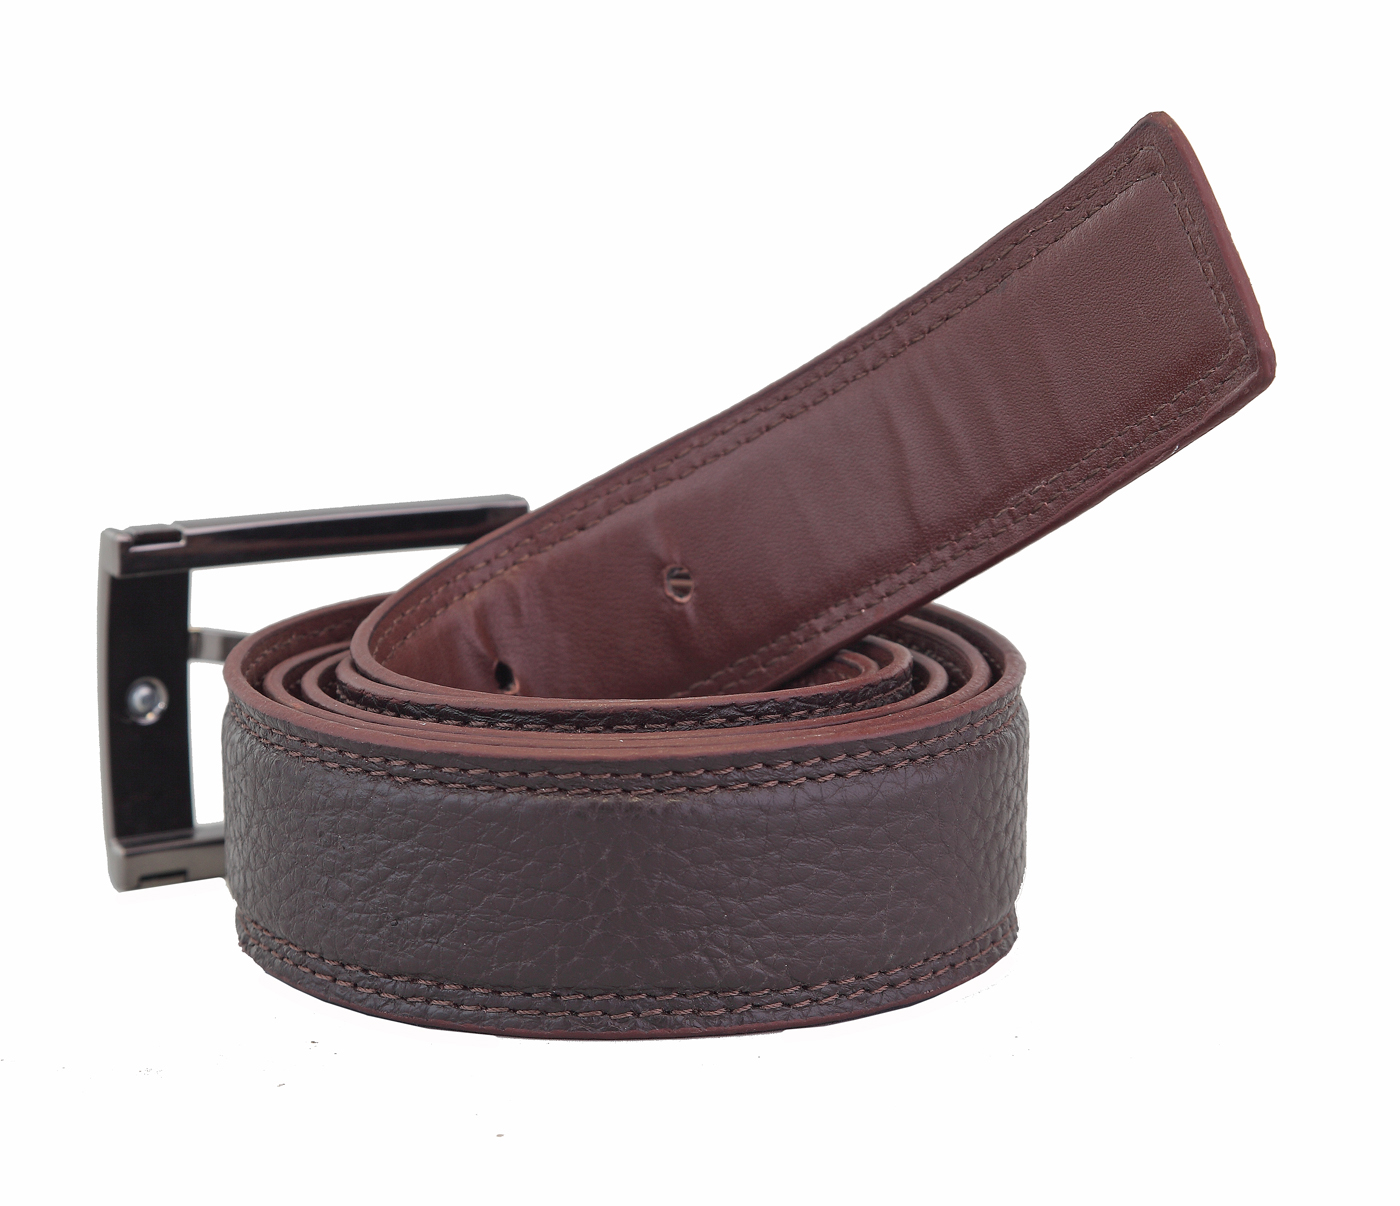  Leather Belt(Brown)BL11